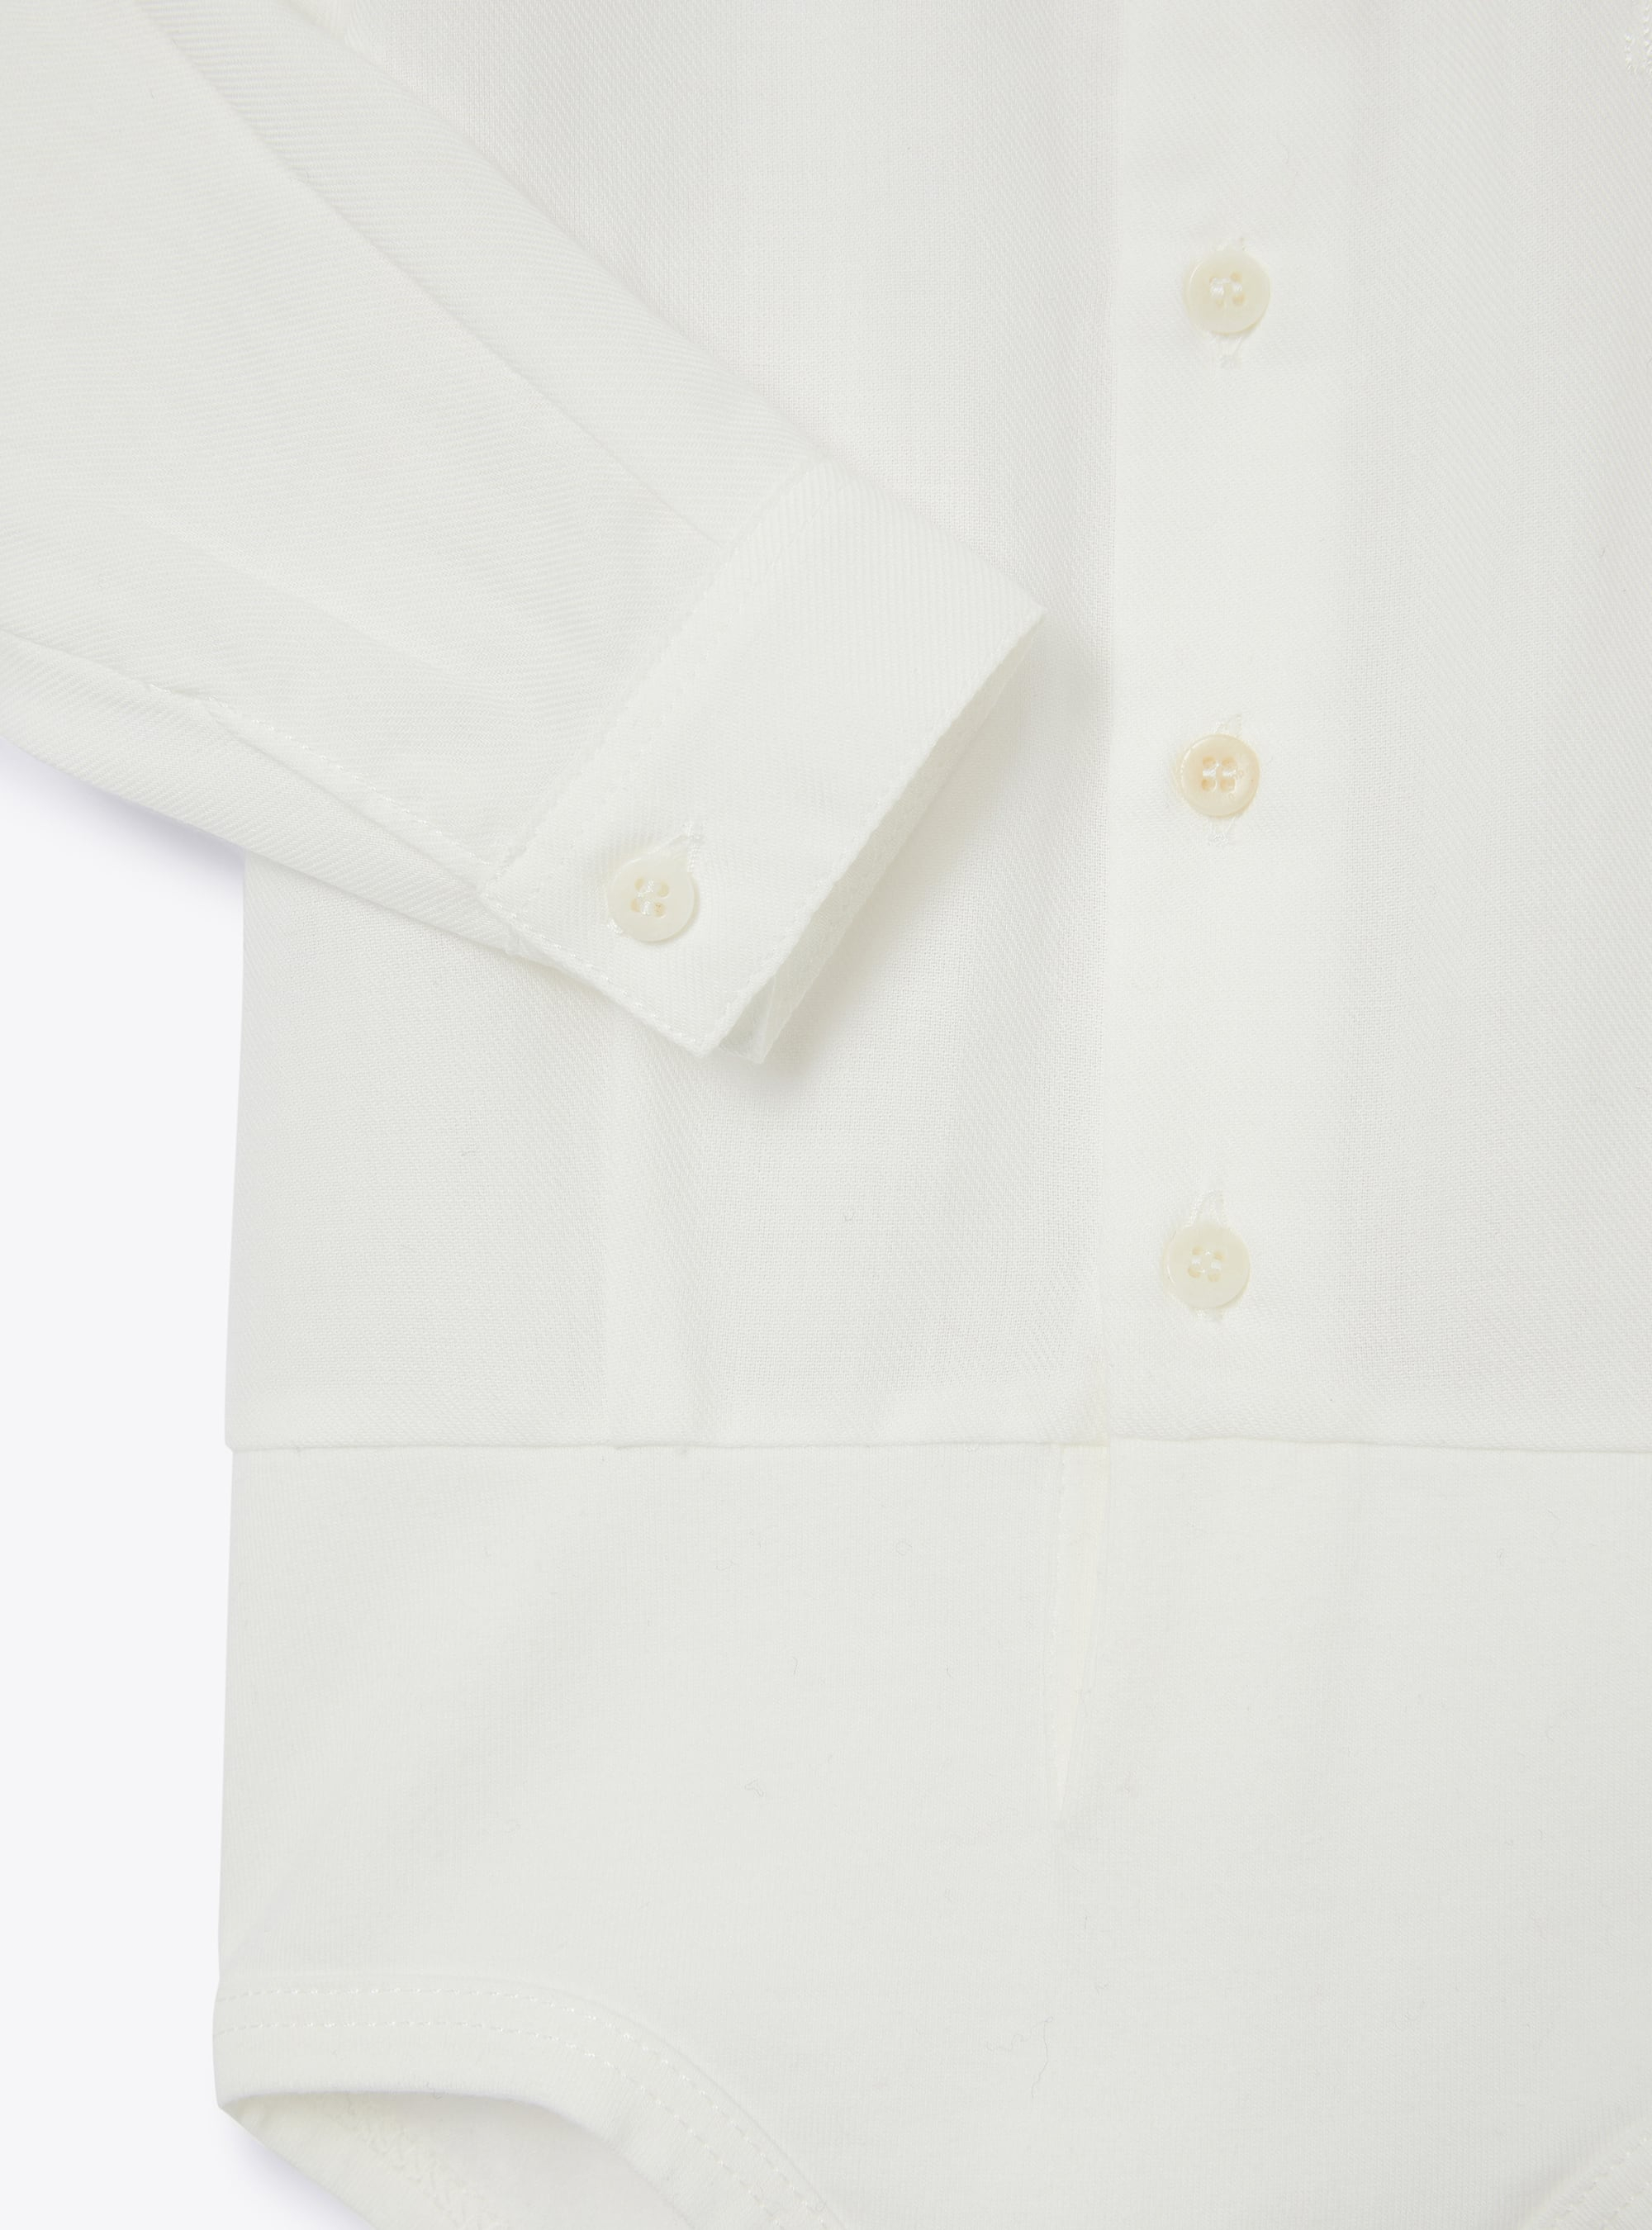 Baby boys' white shirt-style bodysuit - White | Il Gufo